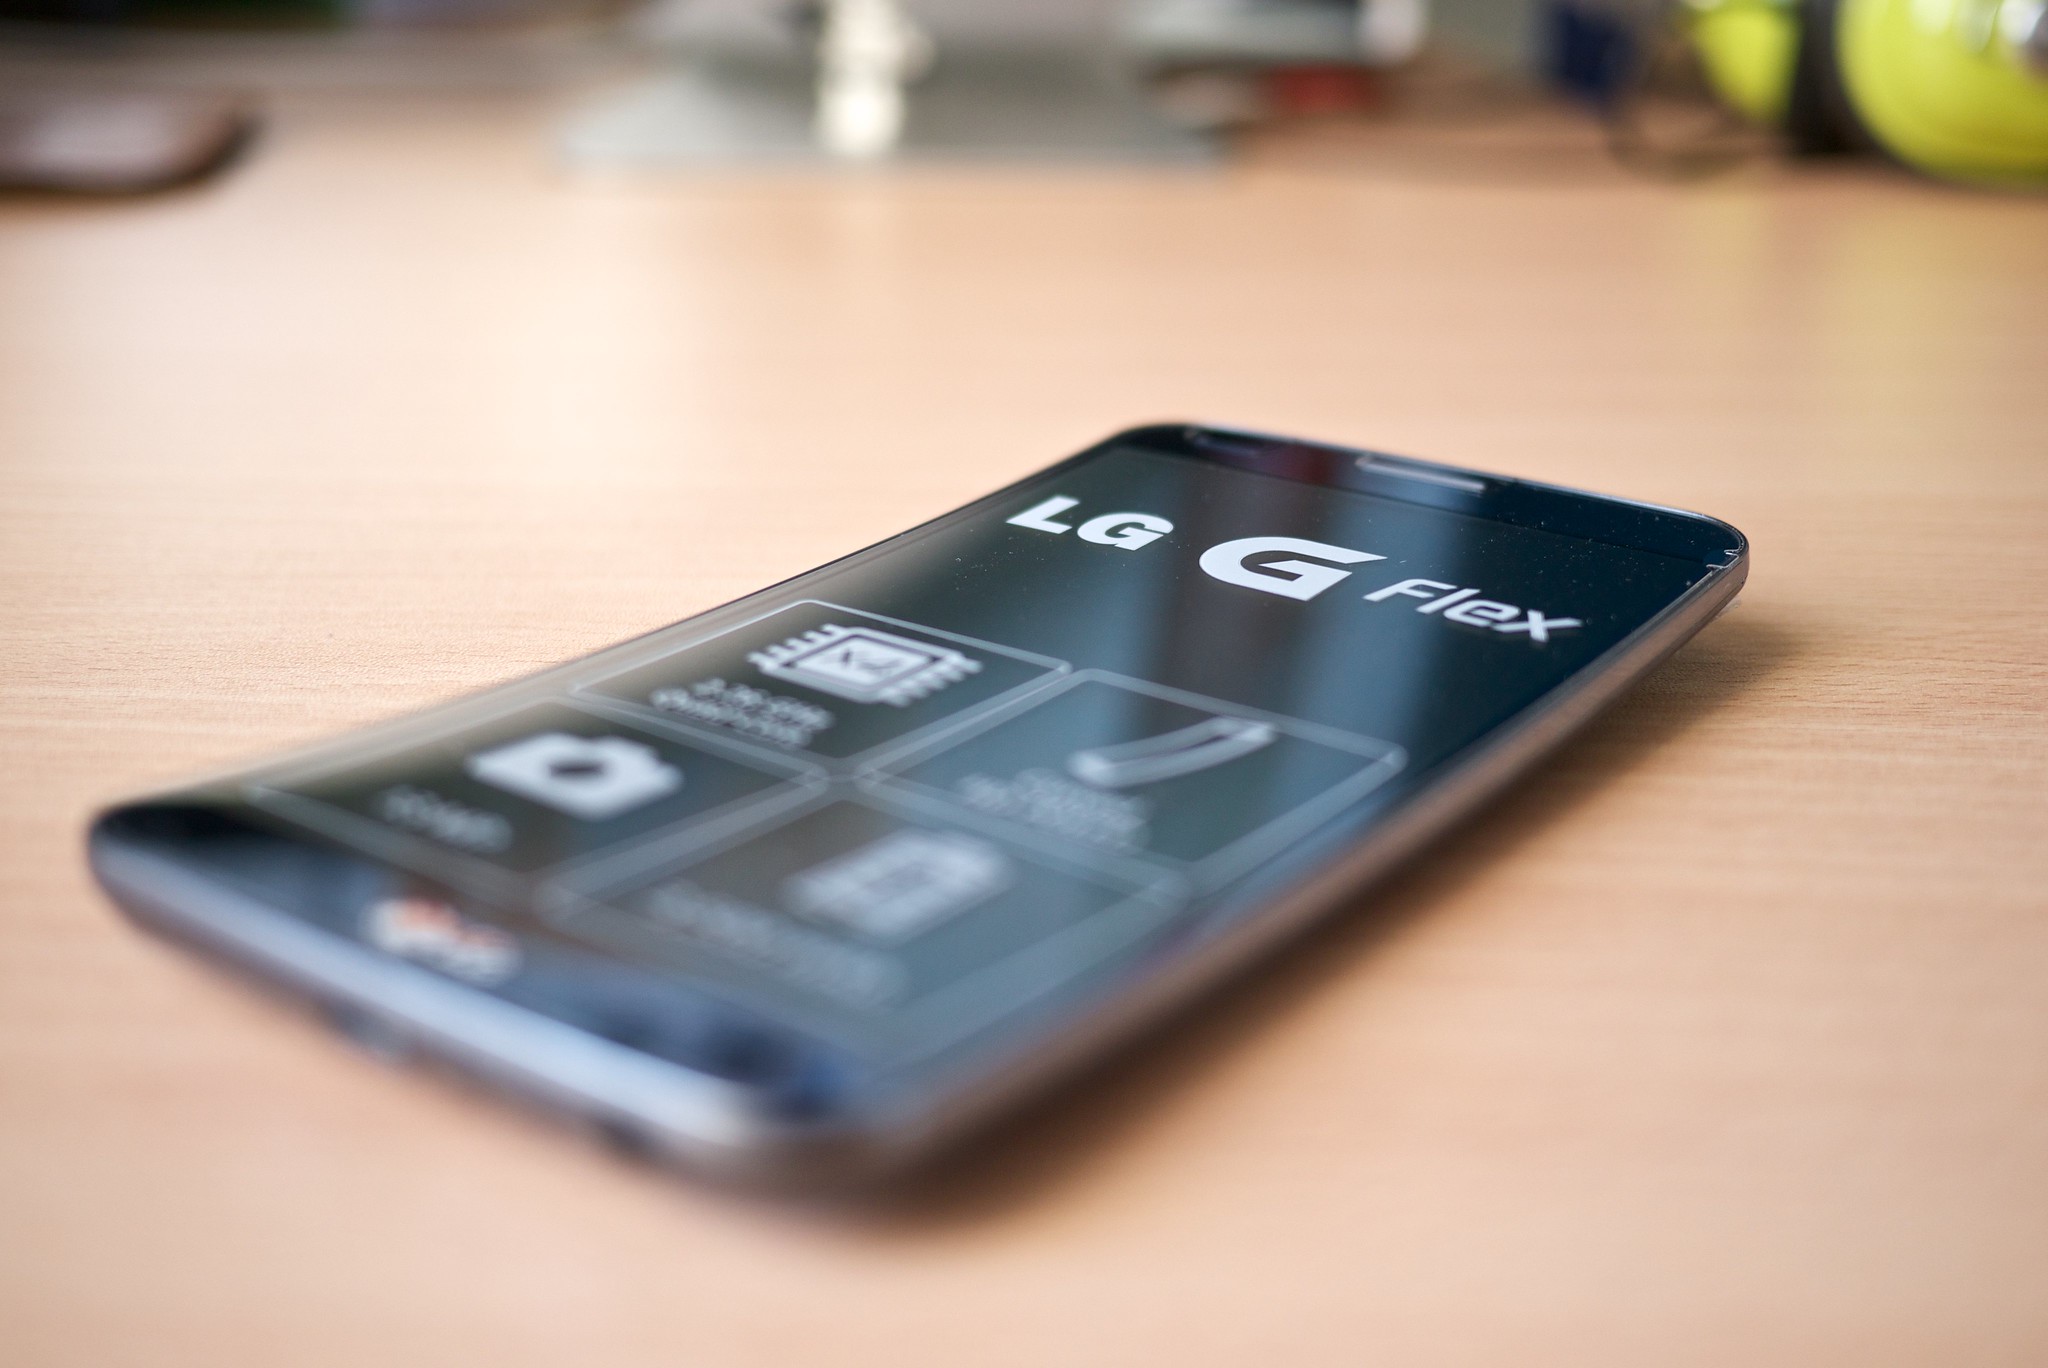 LG G5 : son prix et sa date de sortie en France